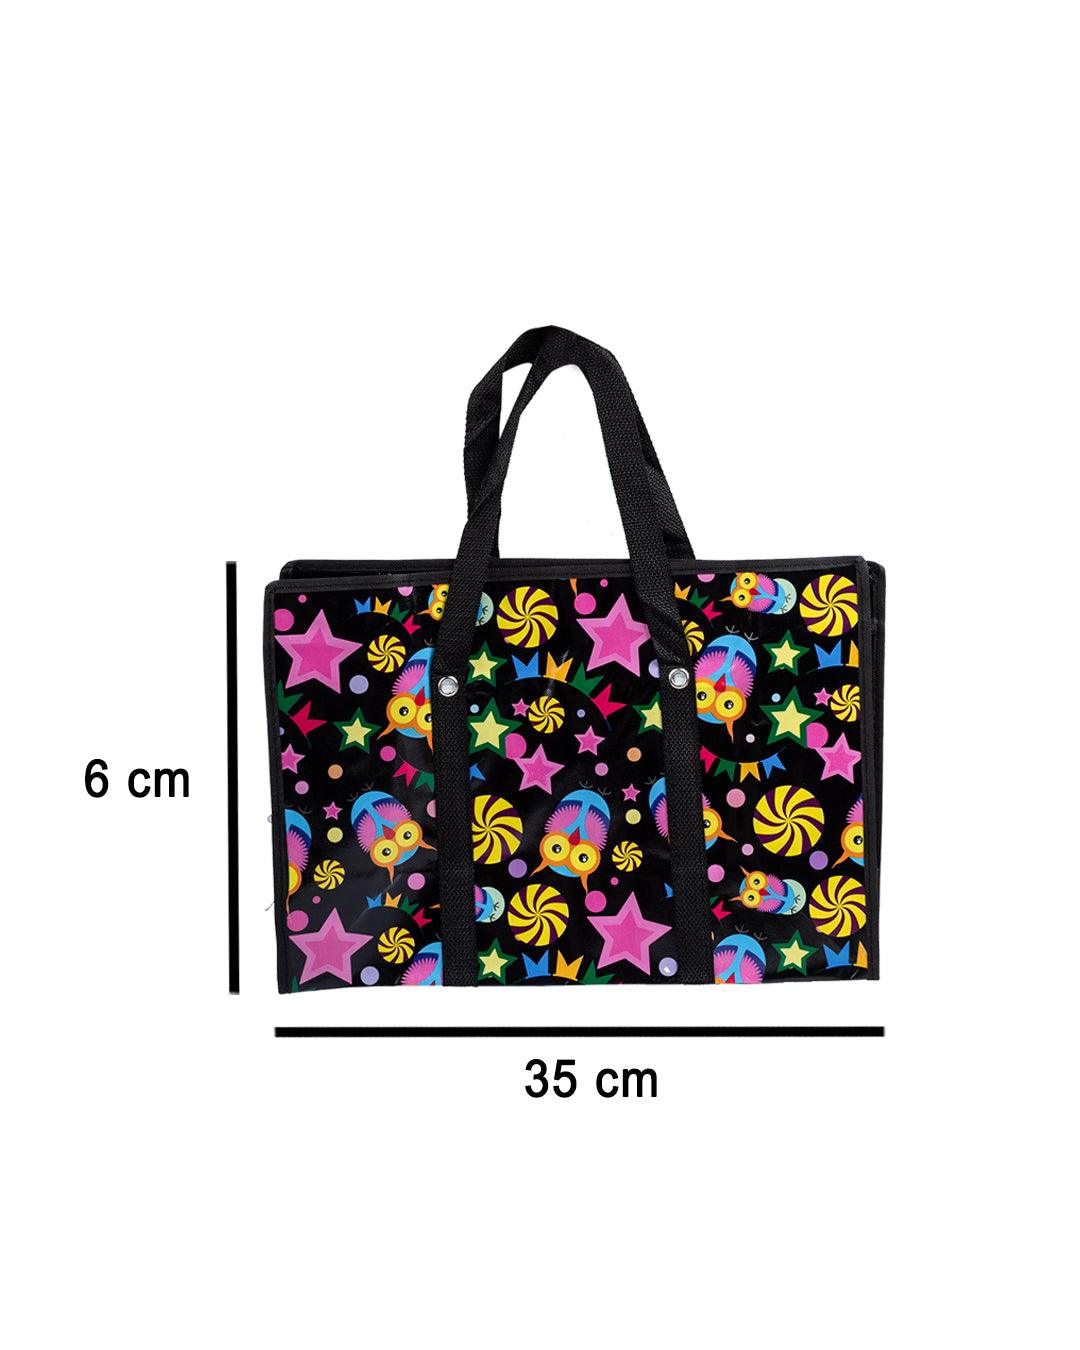 Donati Shopping Bag, Black, Plastic - MARKET 99